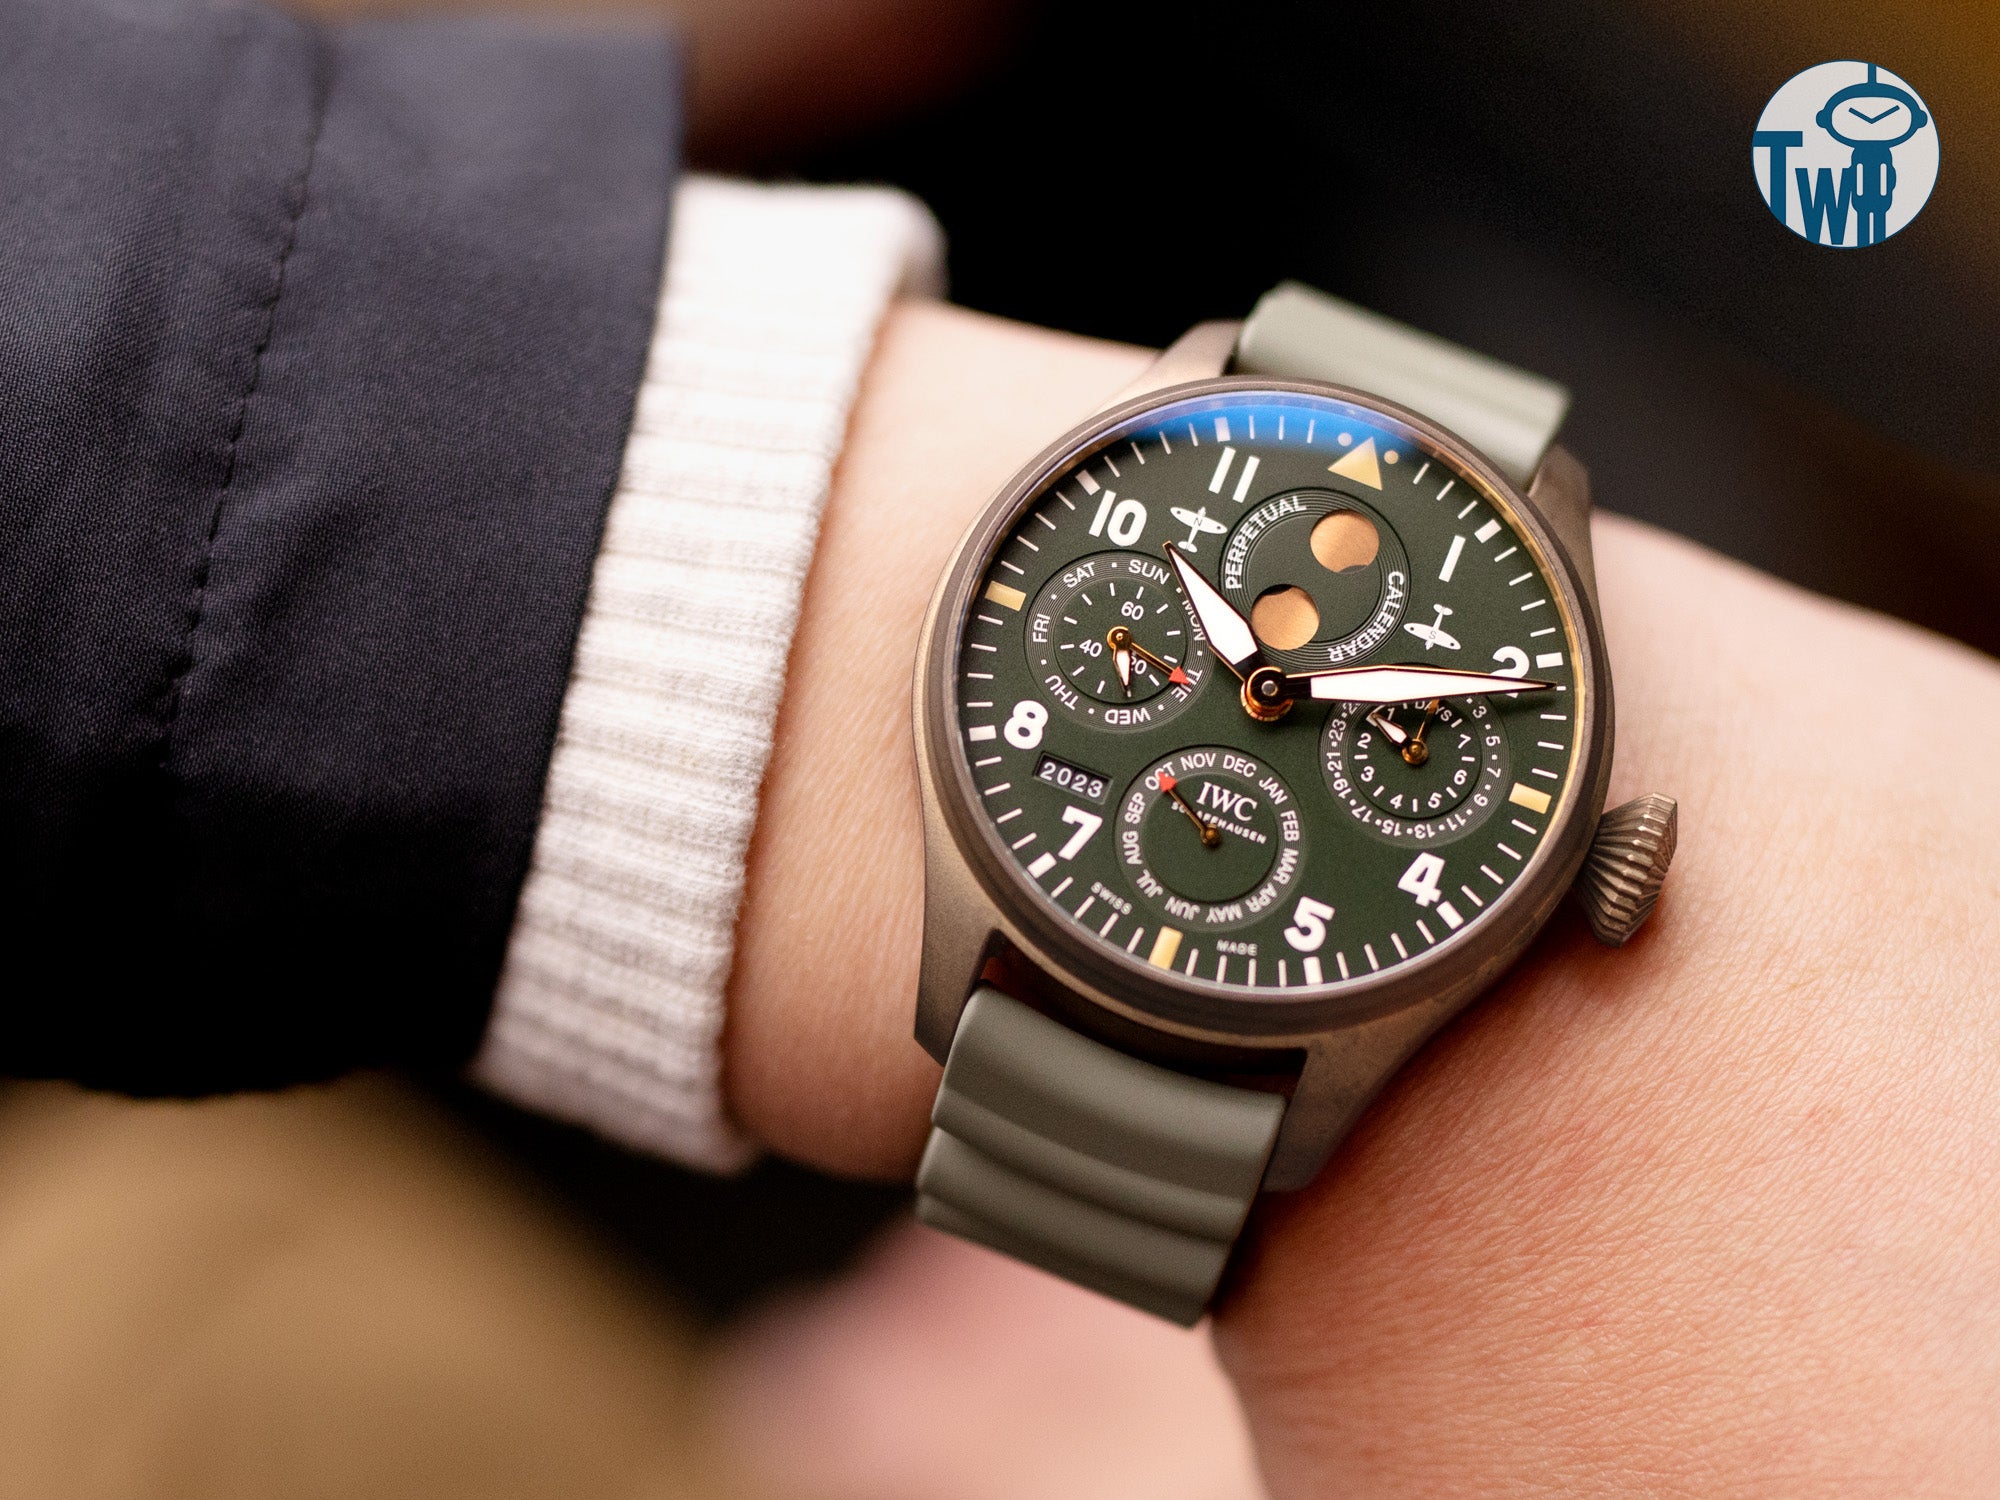 搭配細緻的灰綠色Firewave -火濤錶帶，IWC萬國錶青銅萬年曆噴火戰機手錶呈現出更加自然的美感。這種自然色調突顯了手錶的堅固精緻。